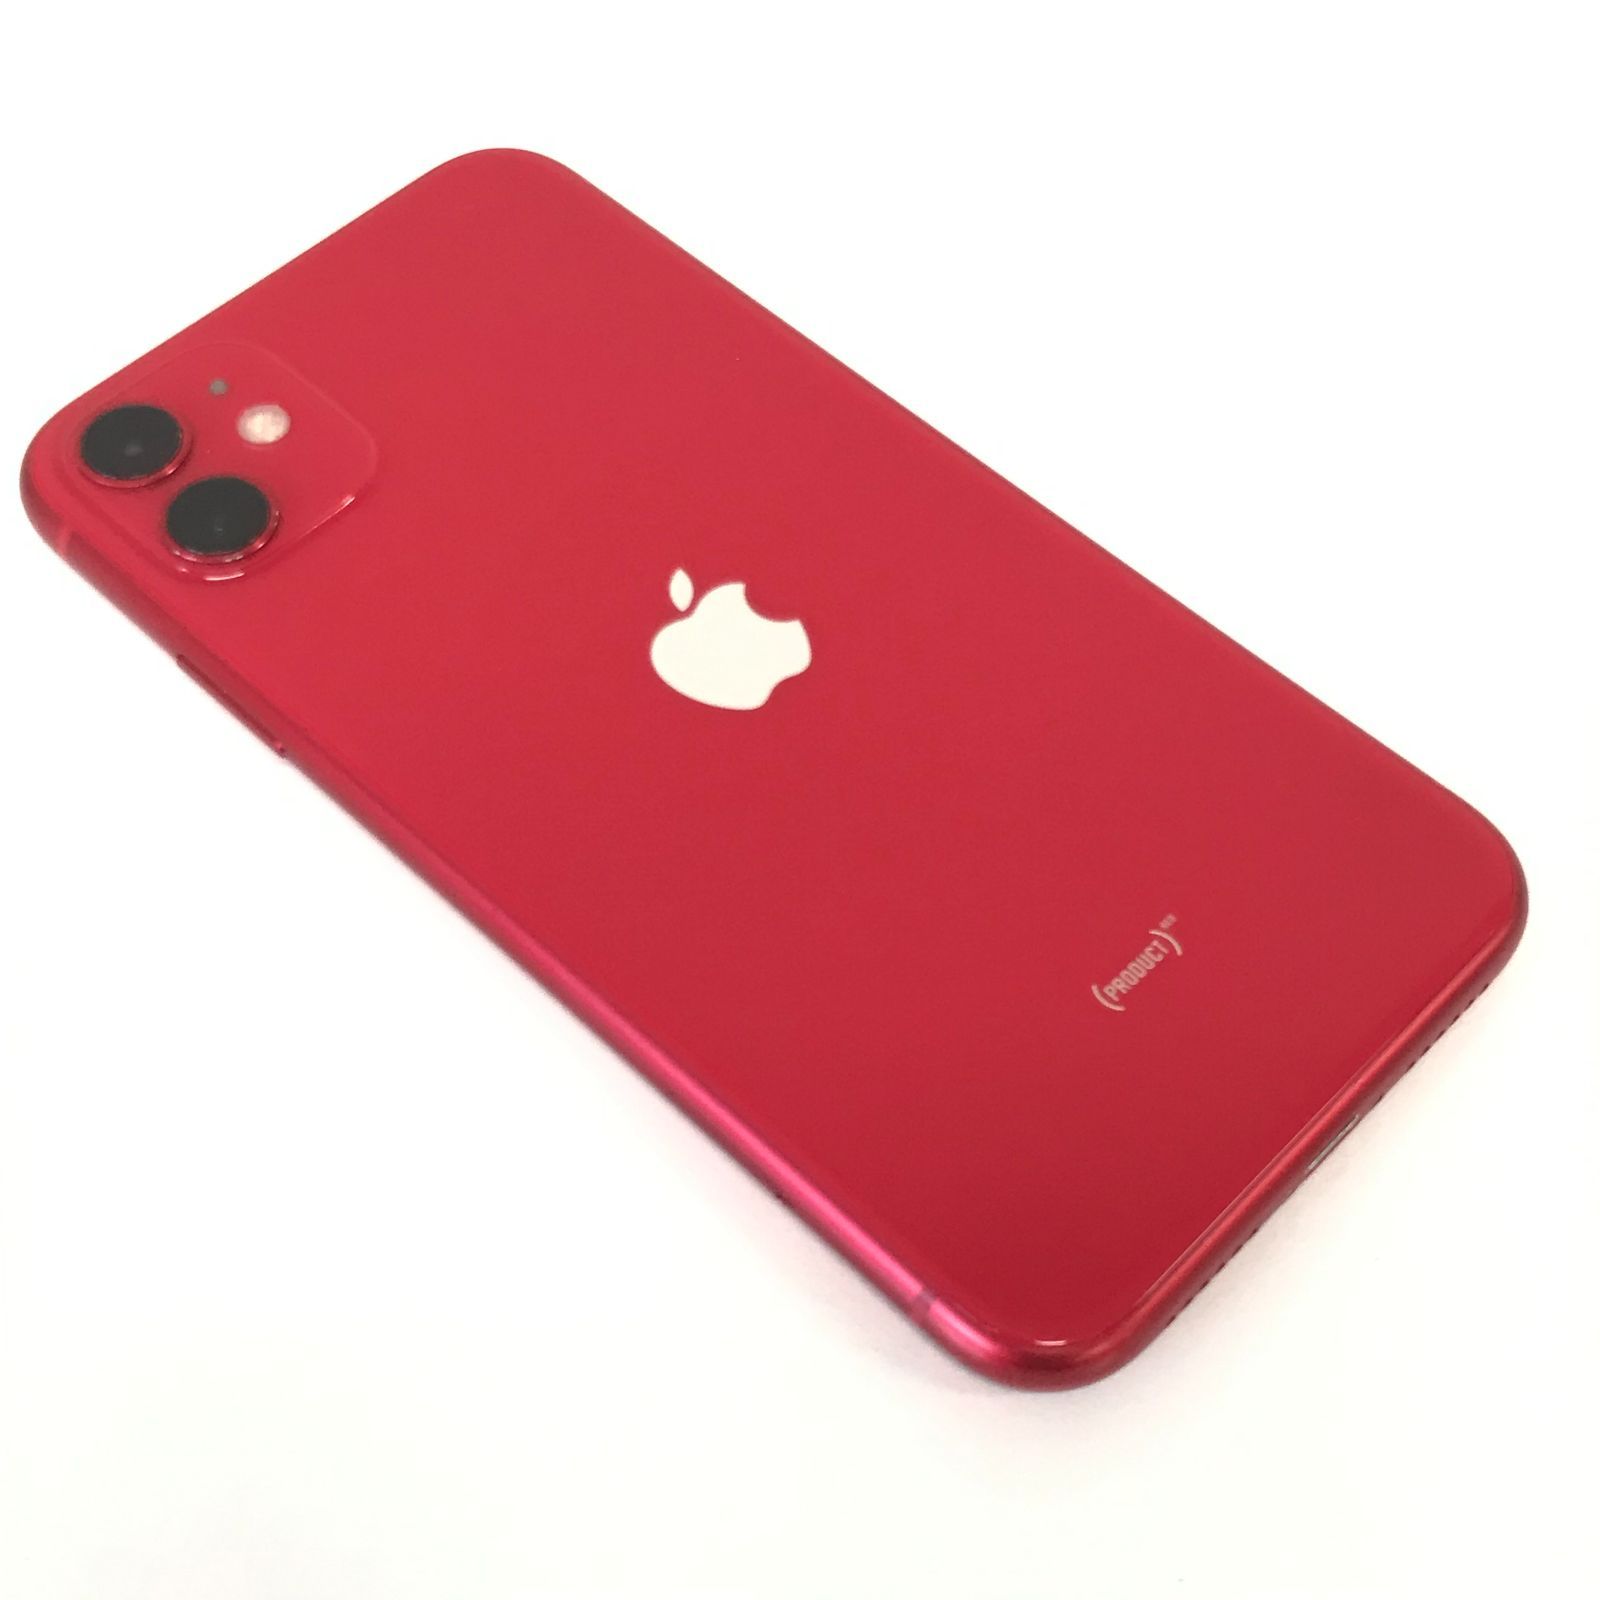 θ【ジャンク品/国内版SIMフリー 】iPhone 11 64GB RED - メルカリ